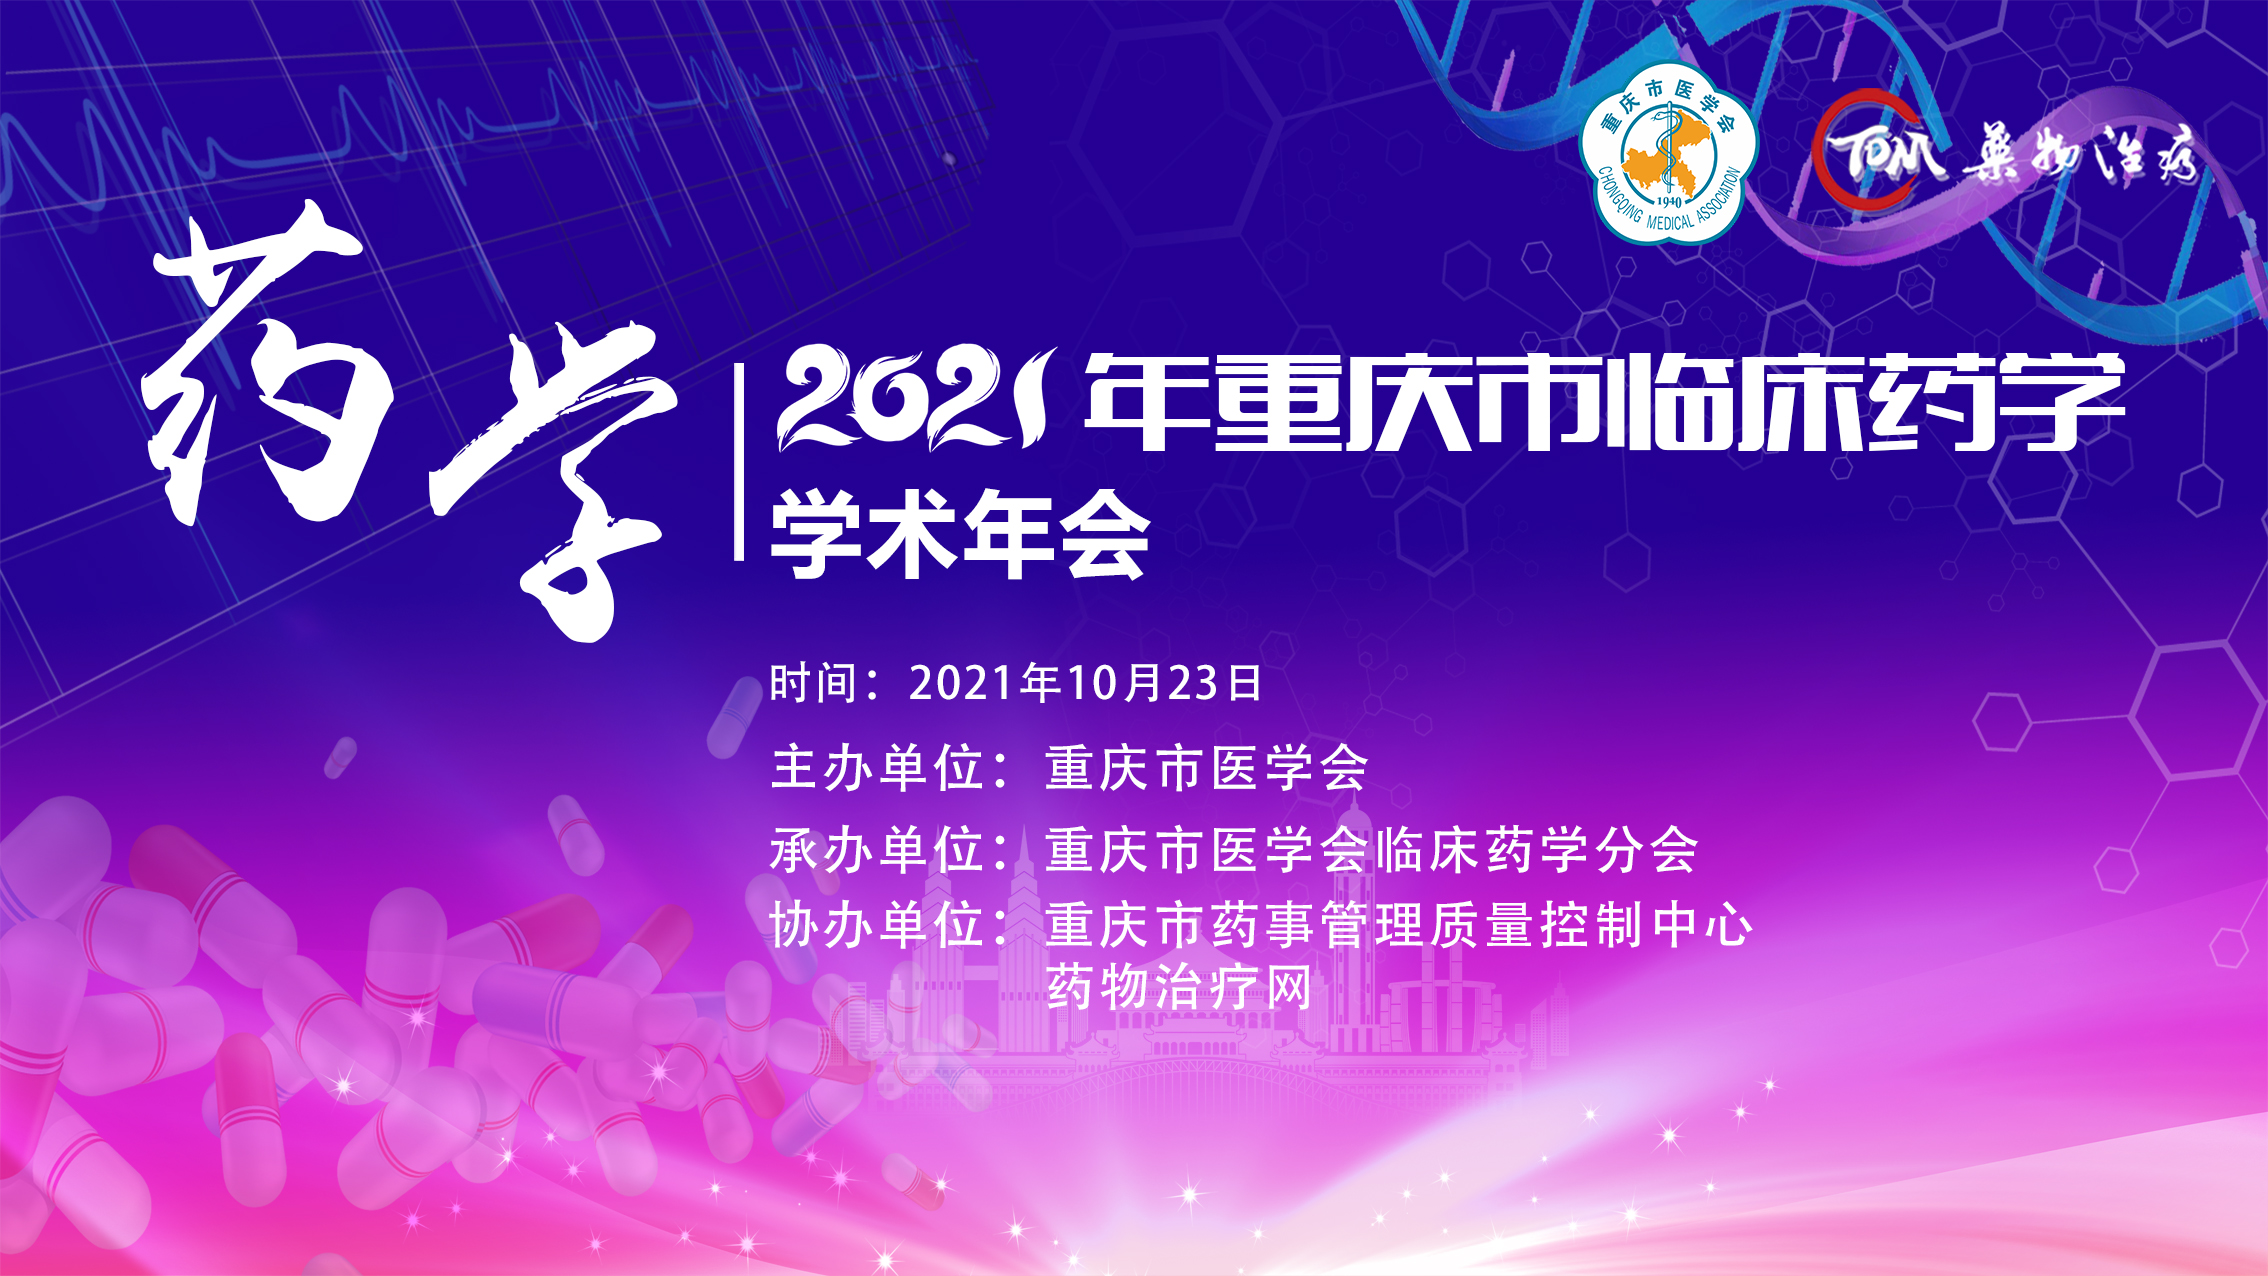 2021年重庆市临床药学学术年会会议